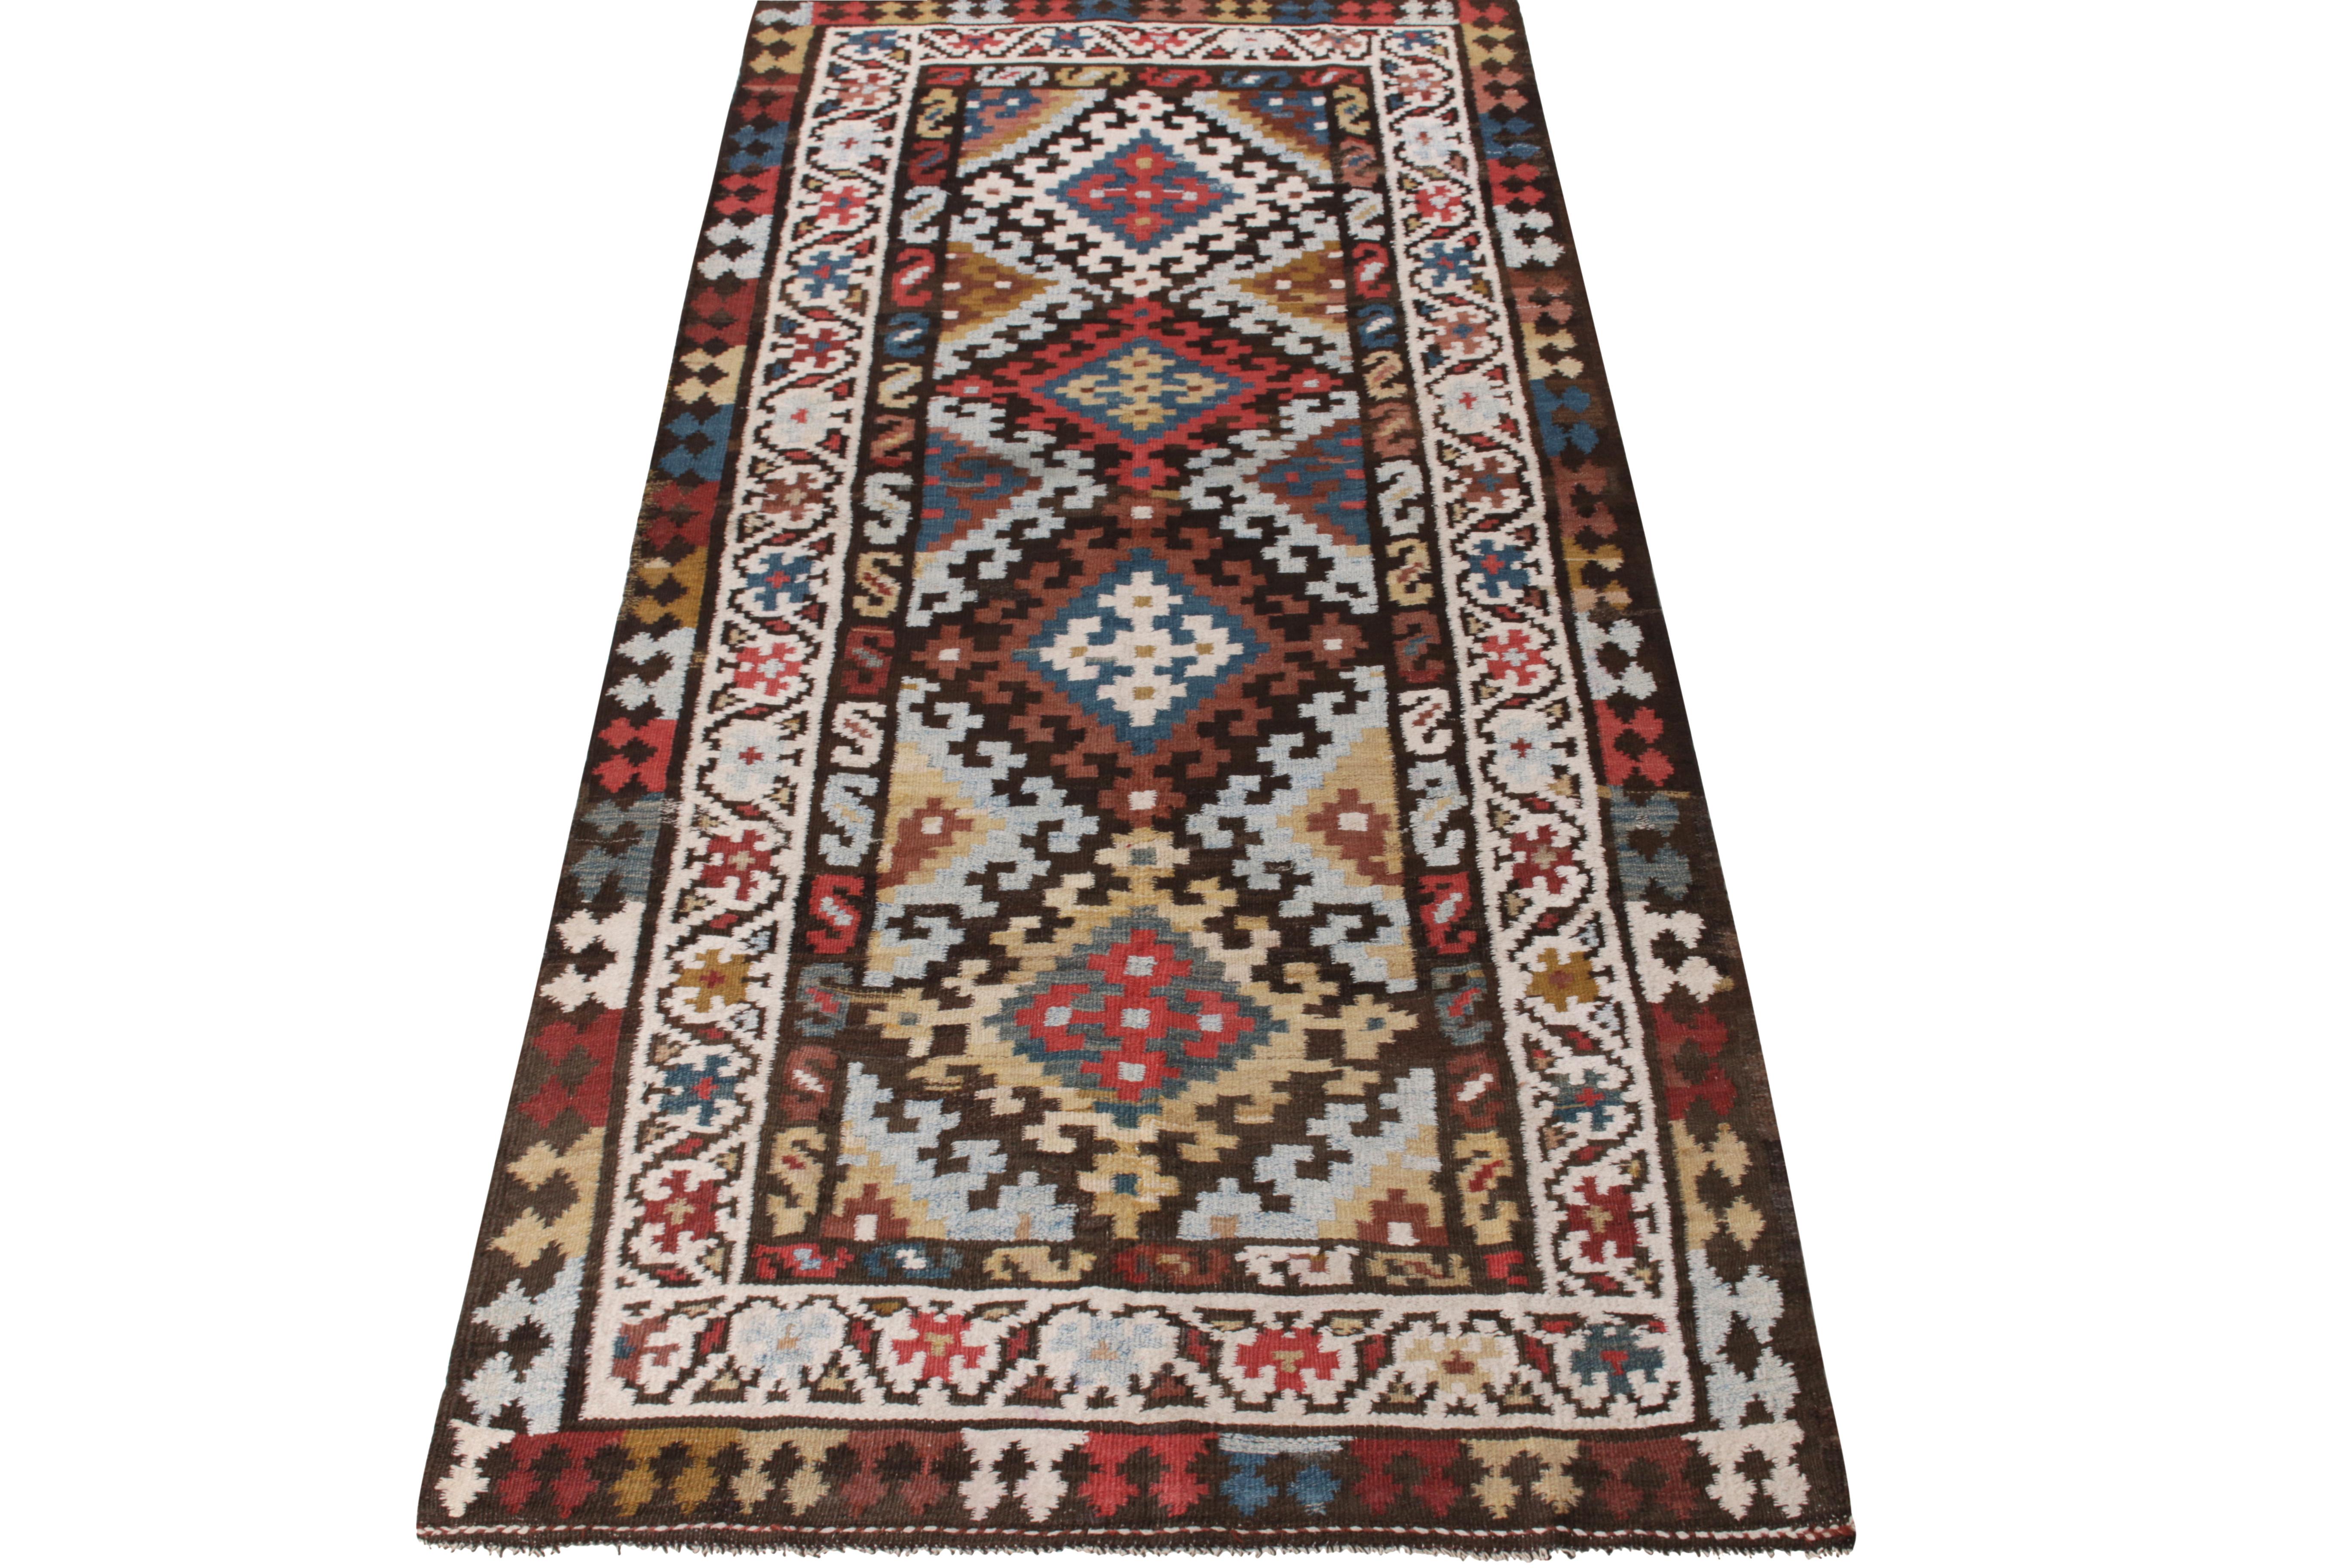 Un tapis galerie Kilim vintage rustique aux sensibilités nomades qui entre dans notre collection Kilim & Flatweave. Des motifs tribaux dans une gamme de couleurs traditionnelles aux tons variés, agrémentant joyeusement le motif géométrique audacieux